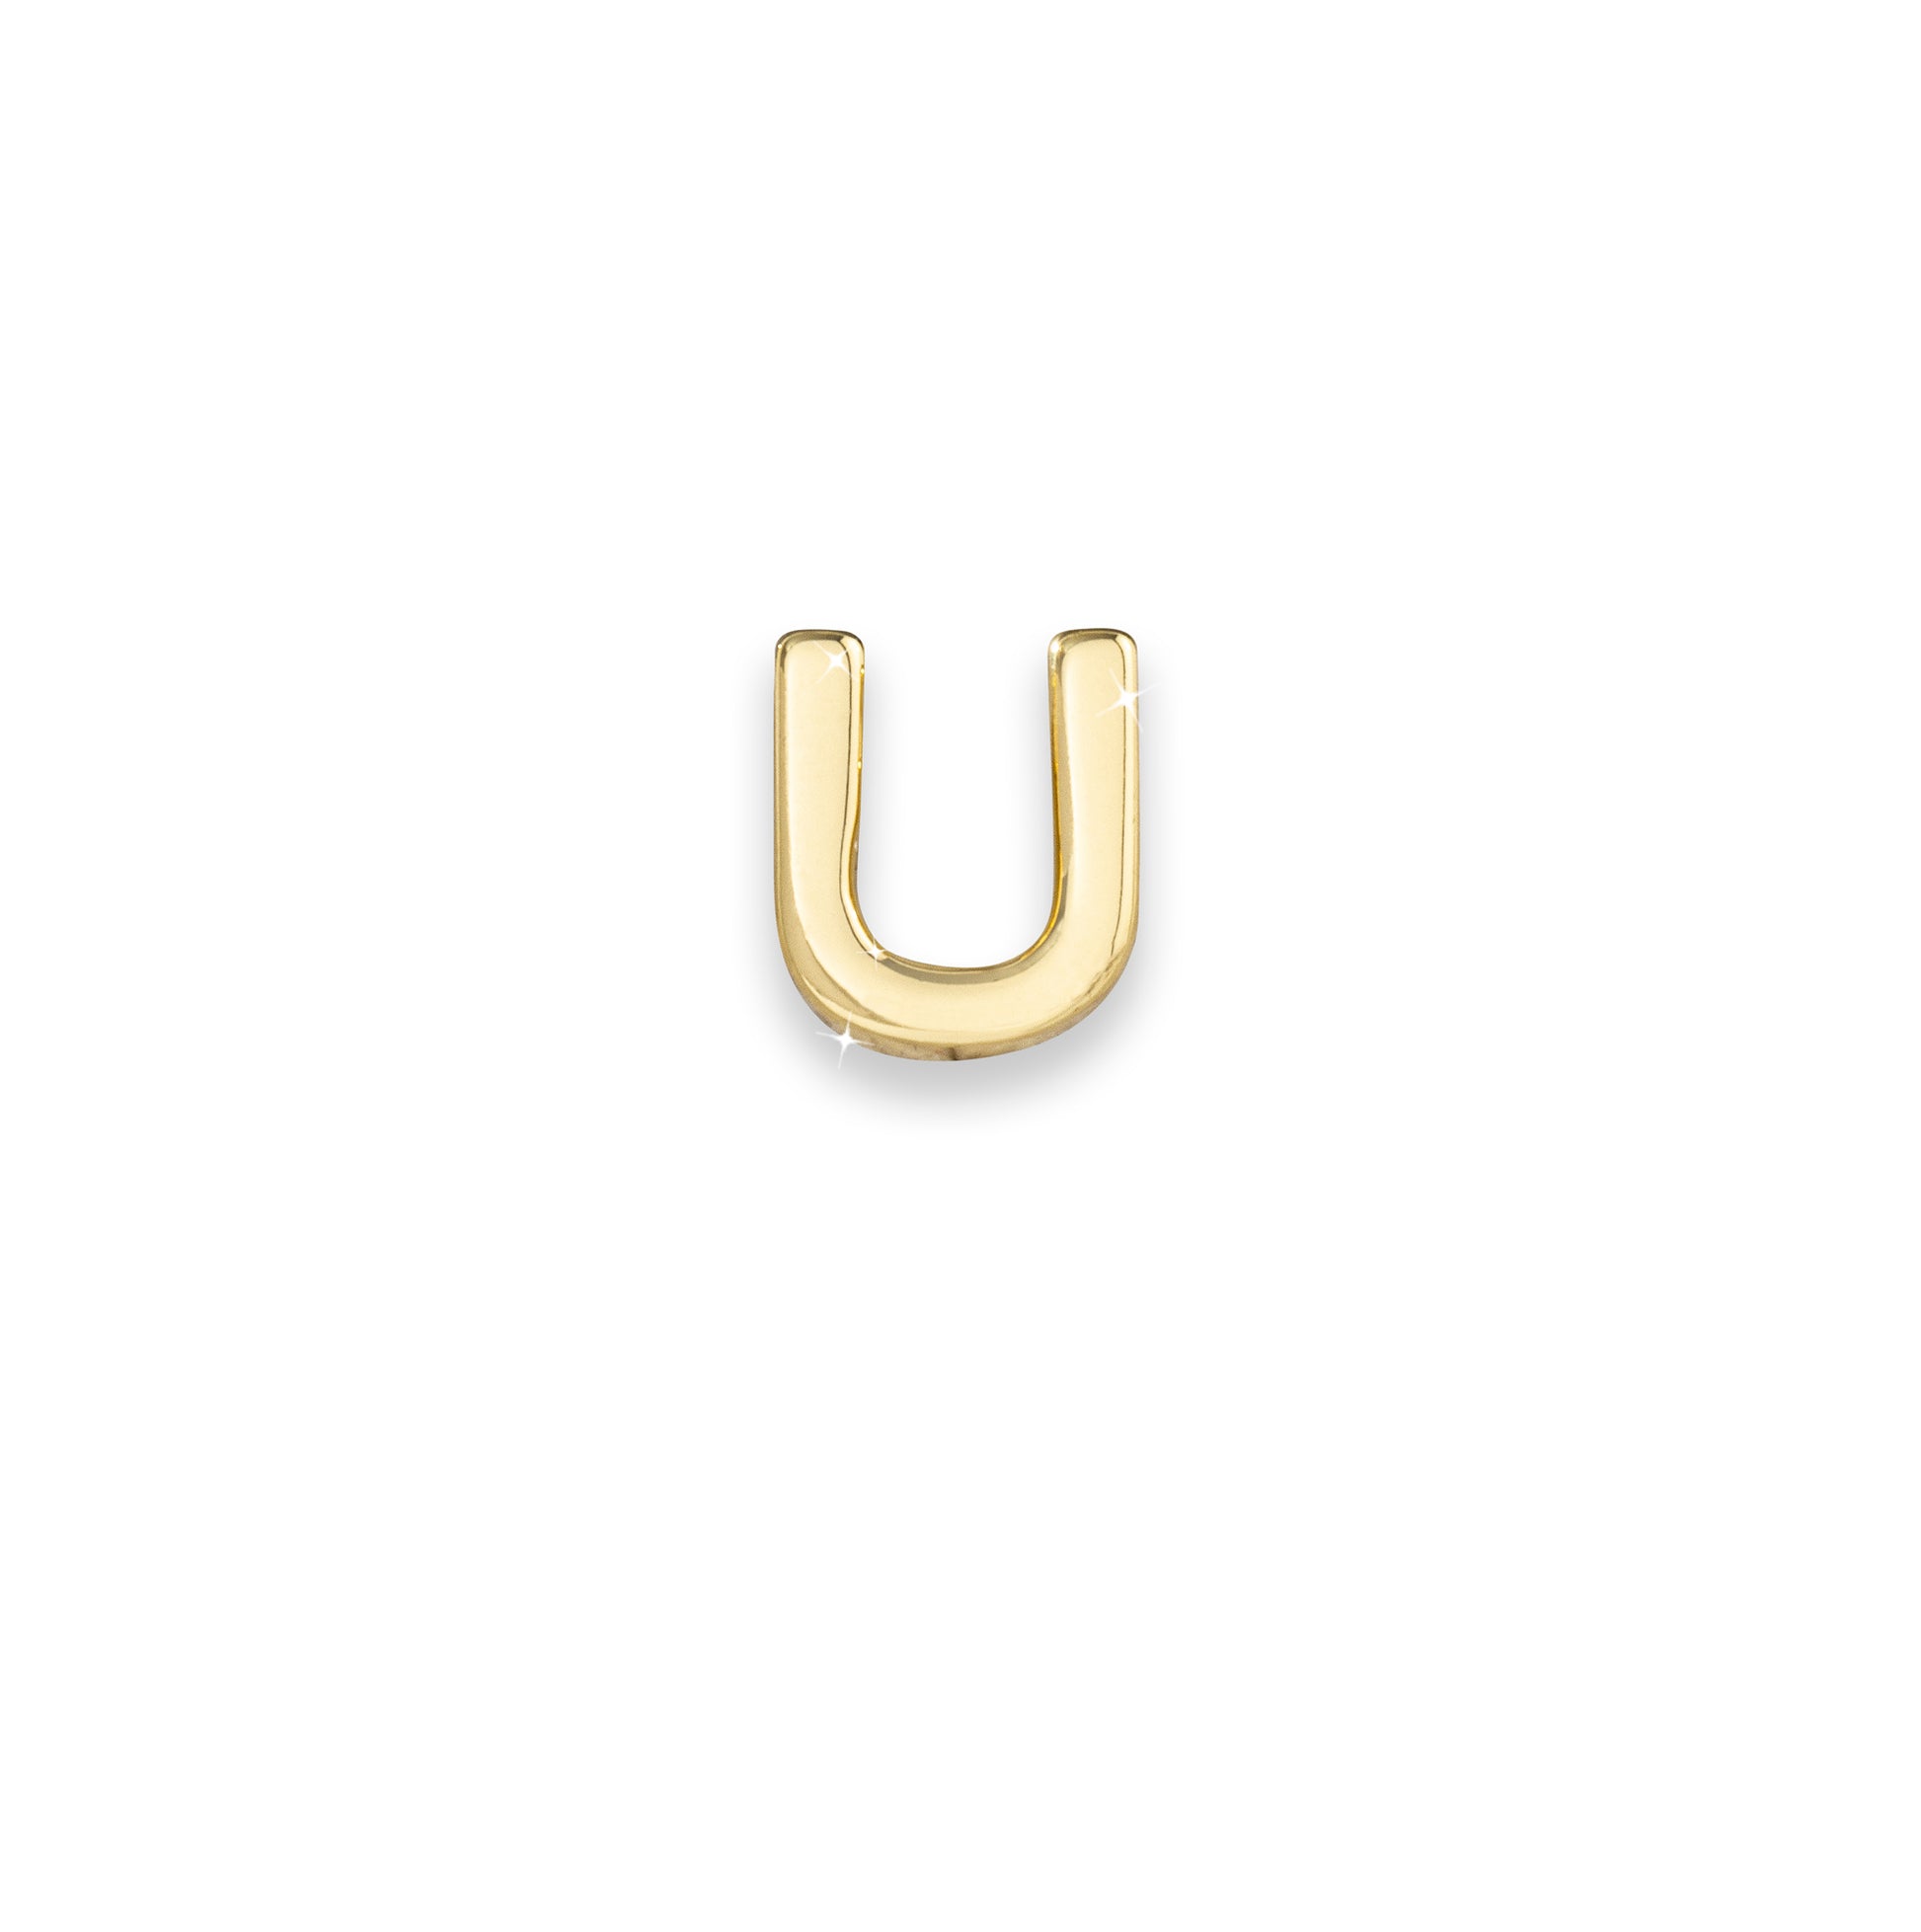 Gold letter U monogram charm for necklaces & bracelets